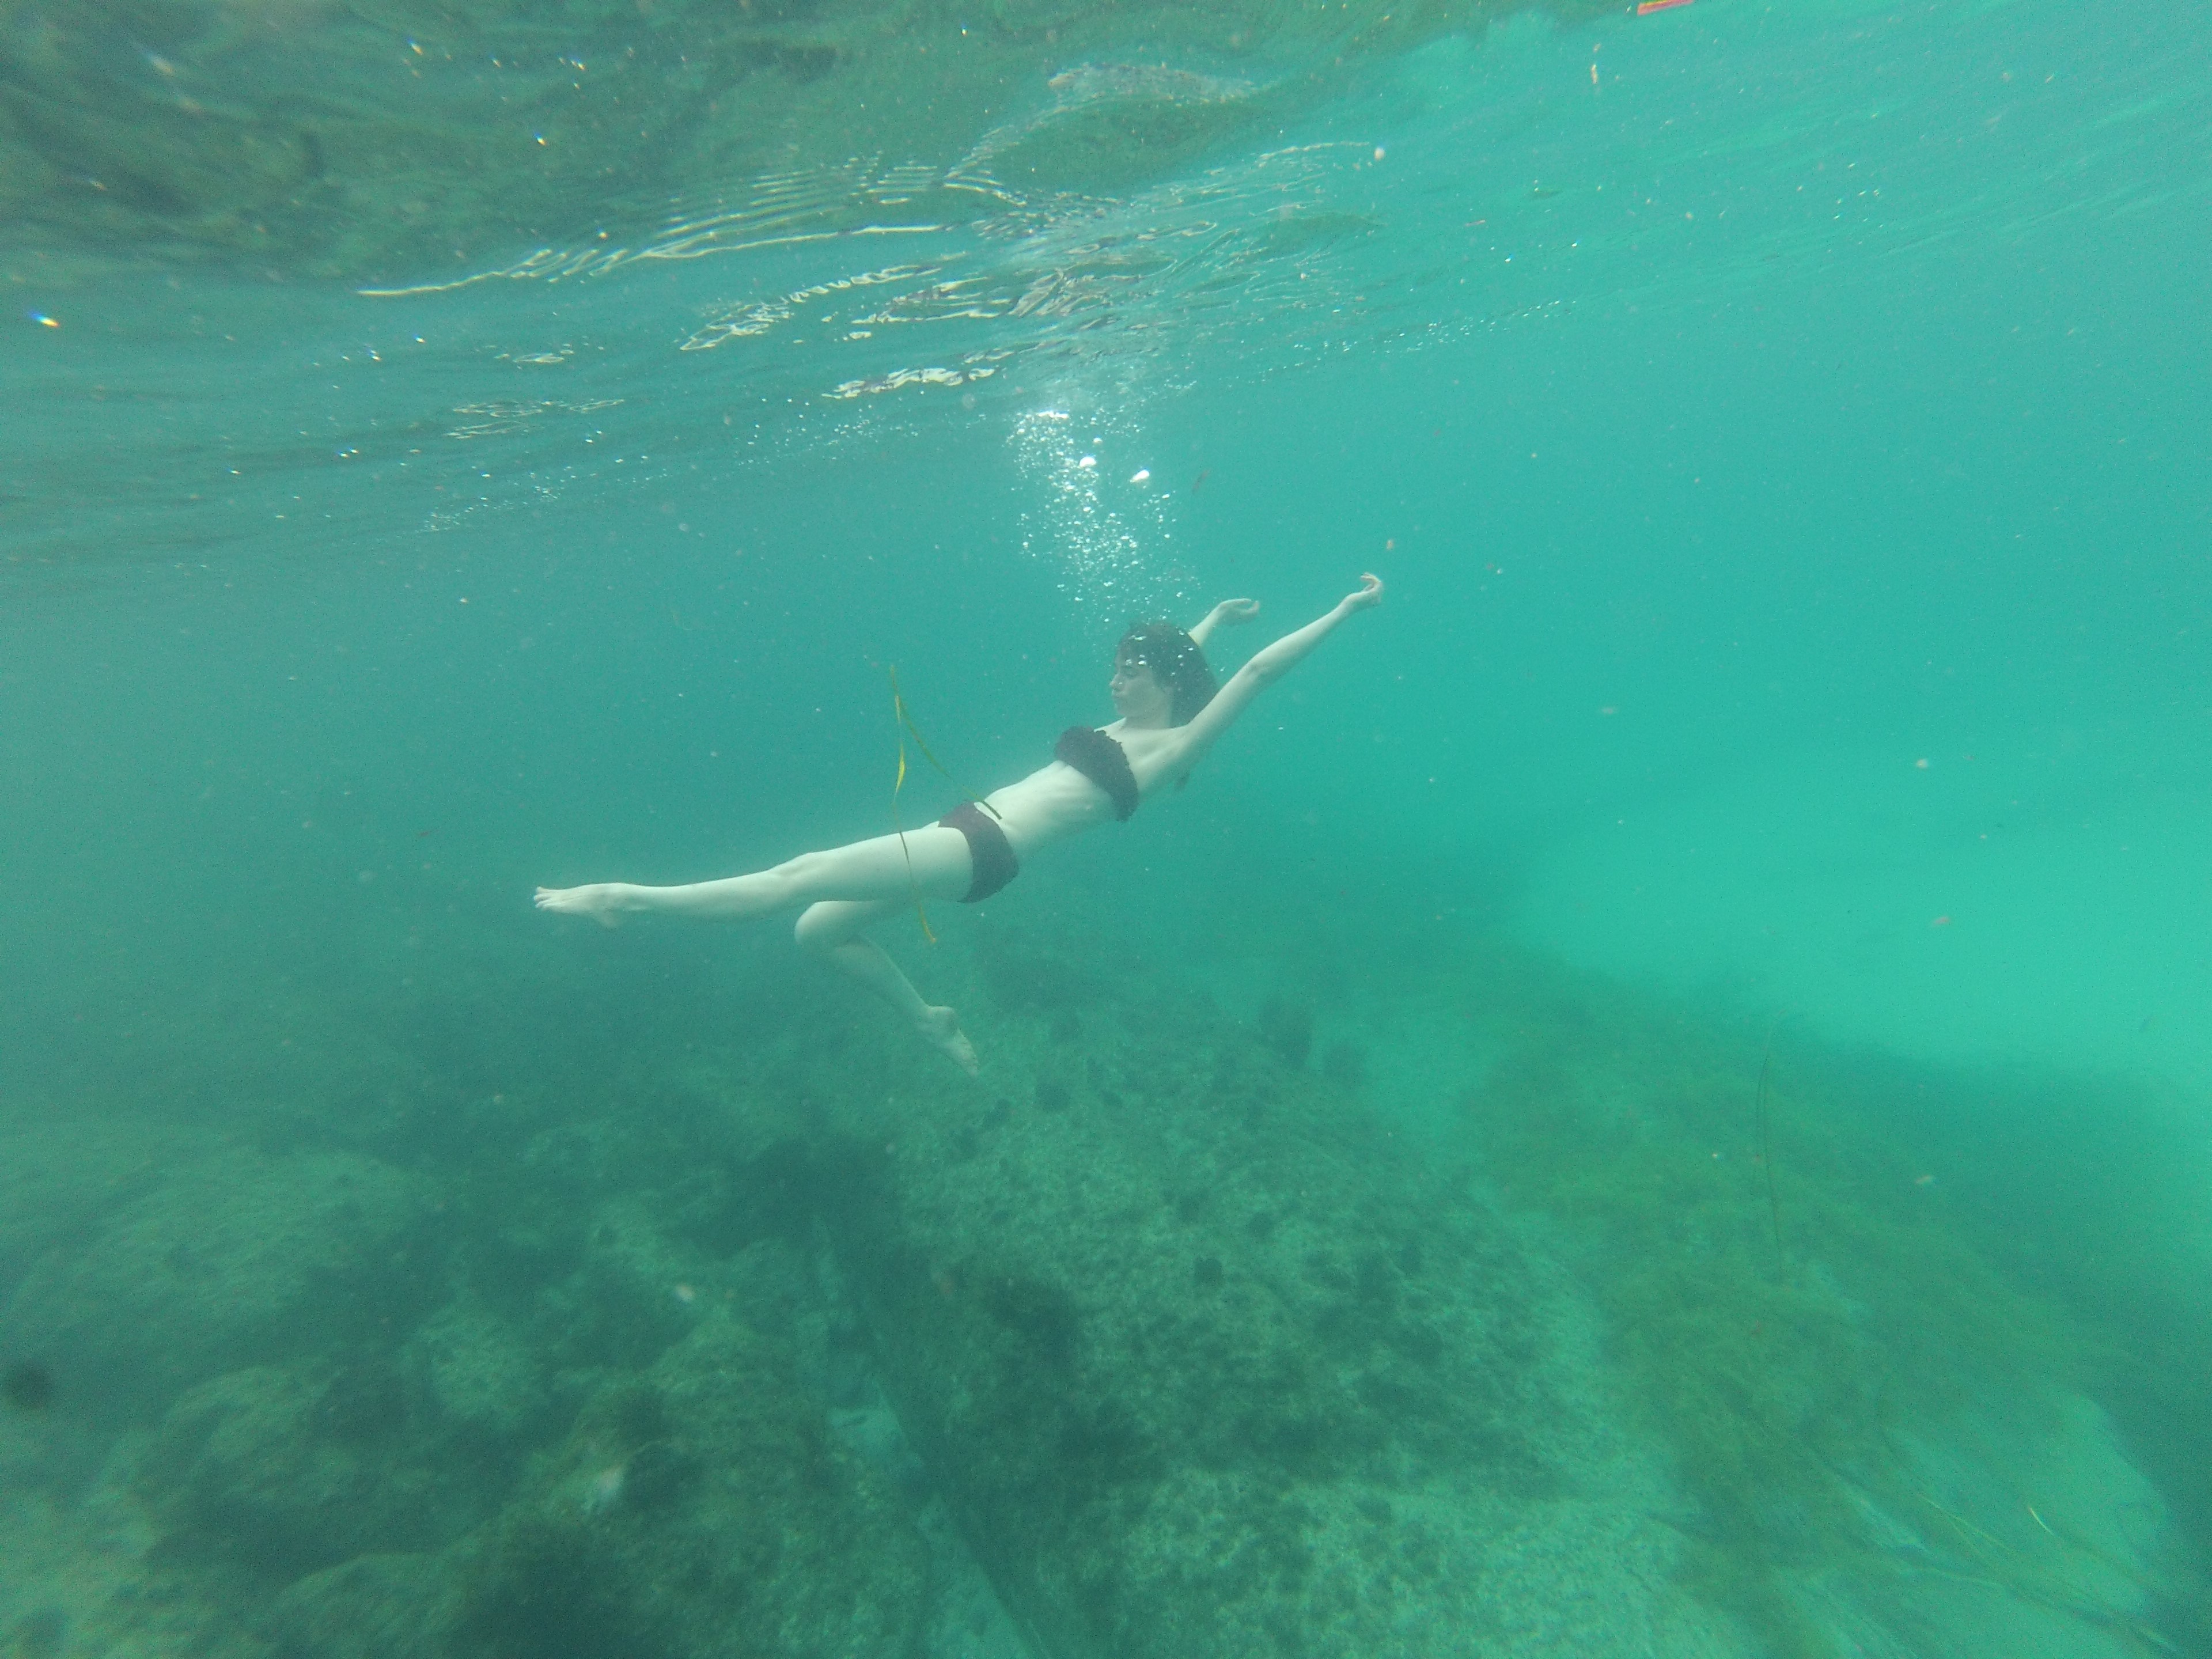 Woman swimming underwater.